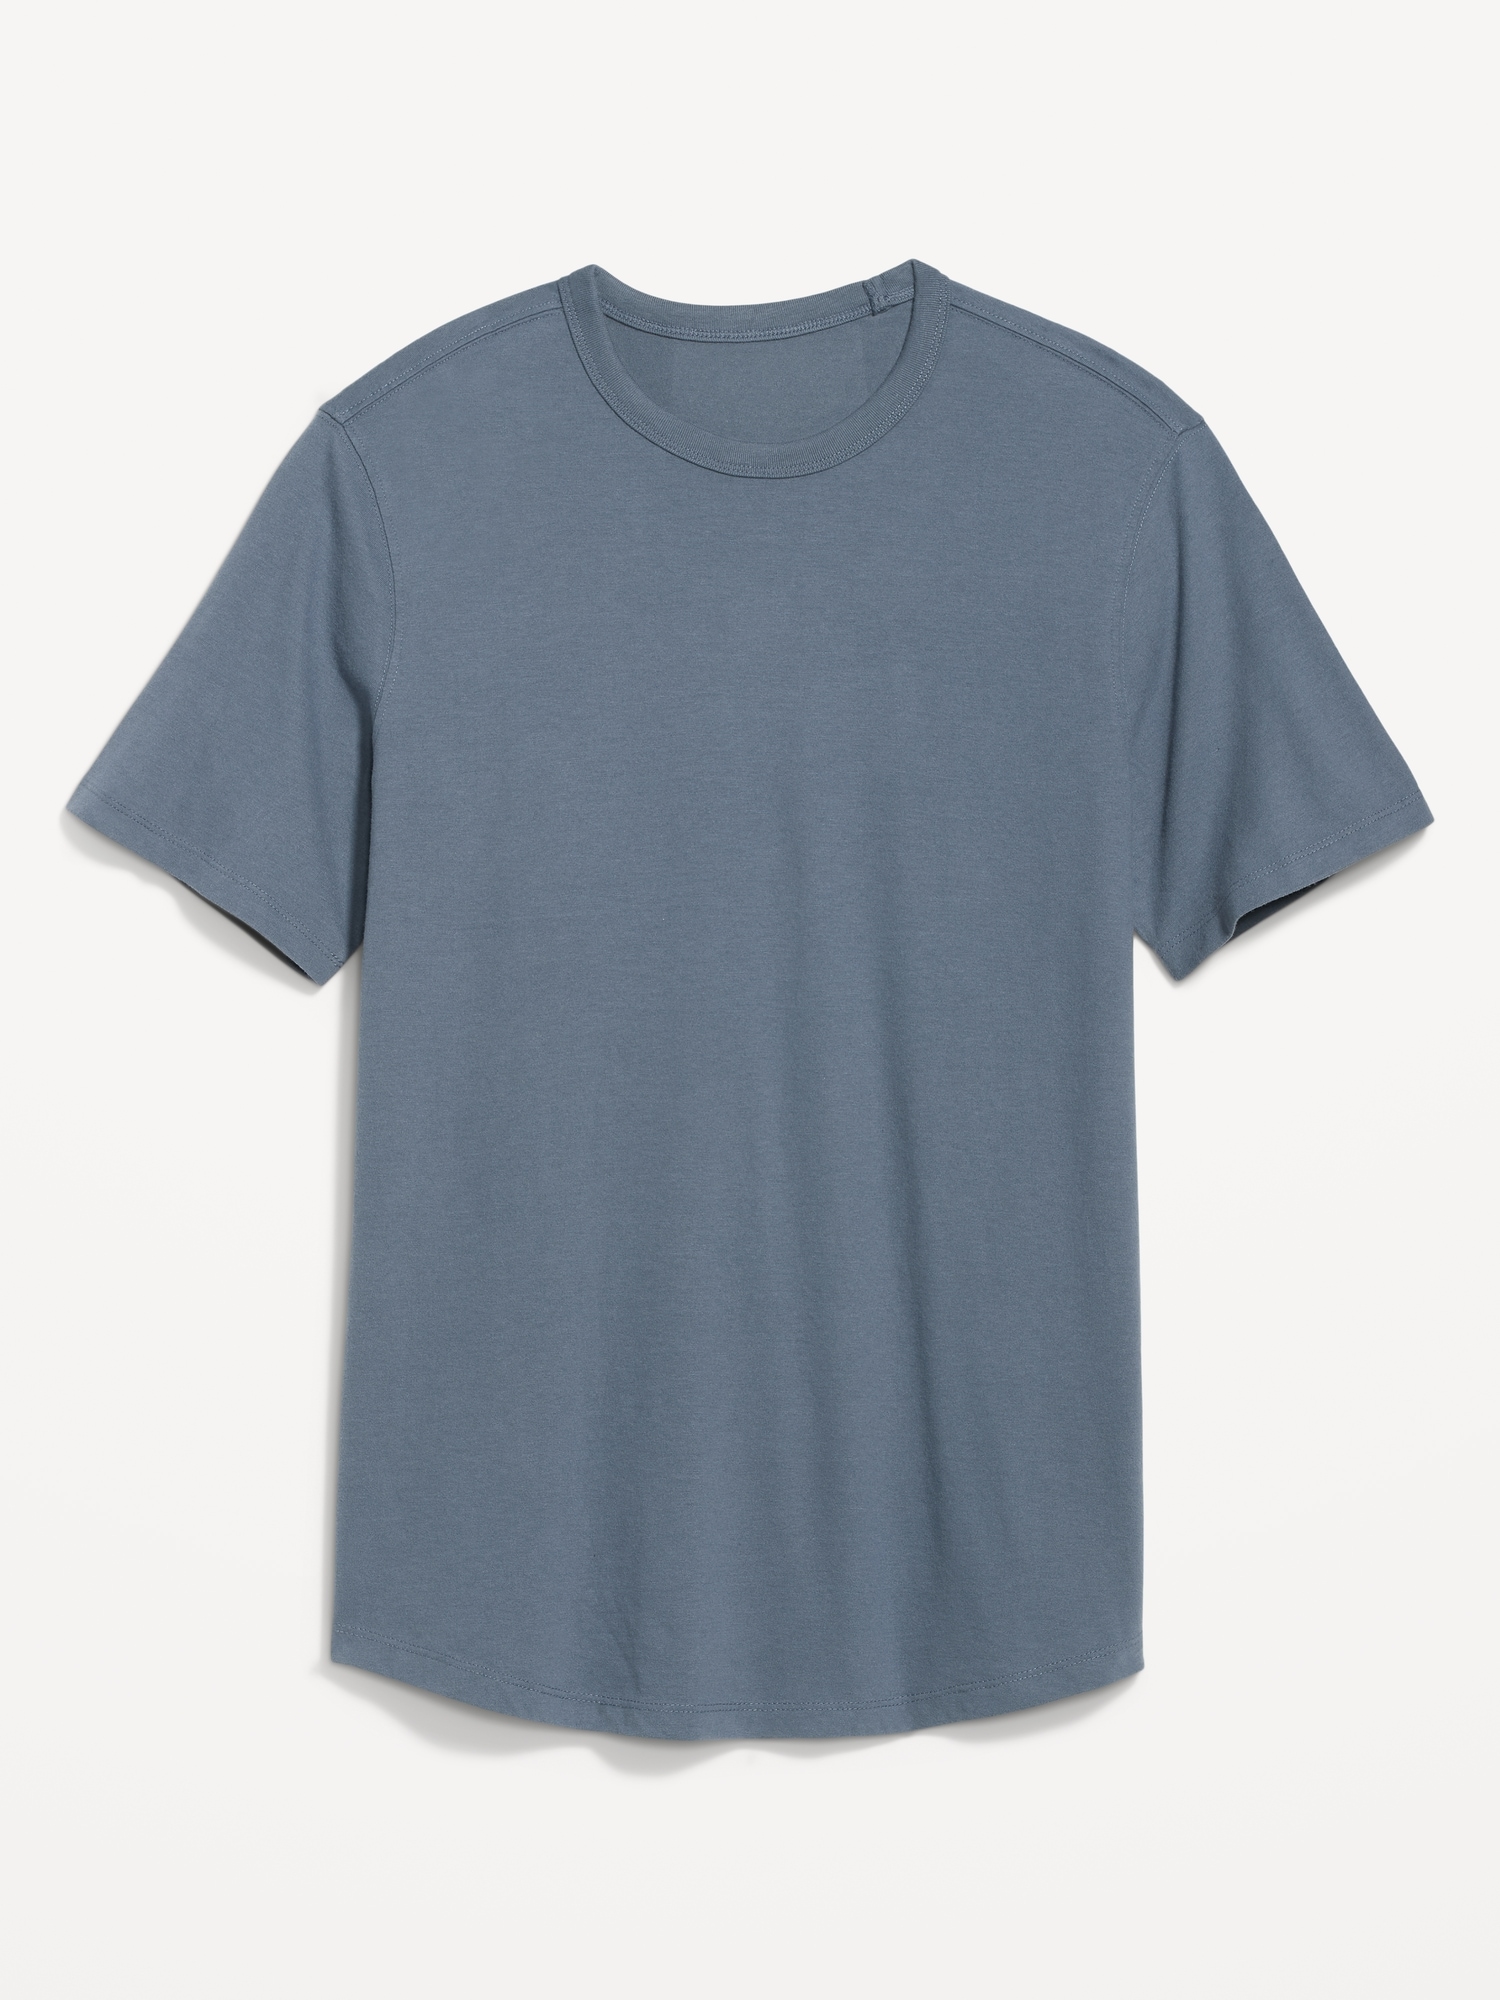 Old Navy Soft-Washed Curved-Hem T-Shirt for Men blue. 1